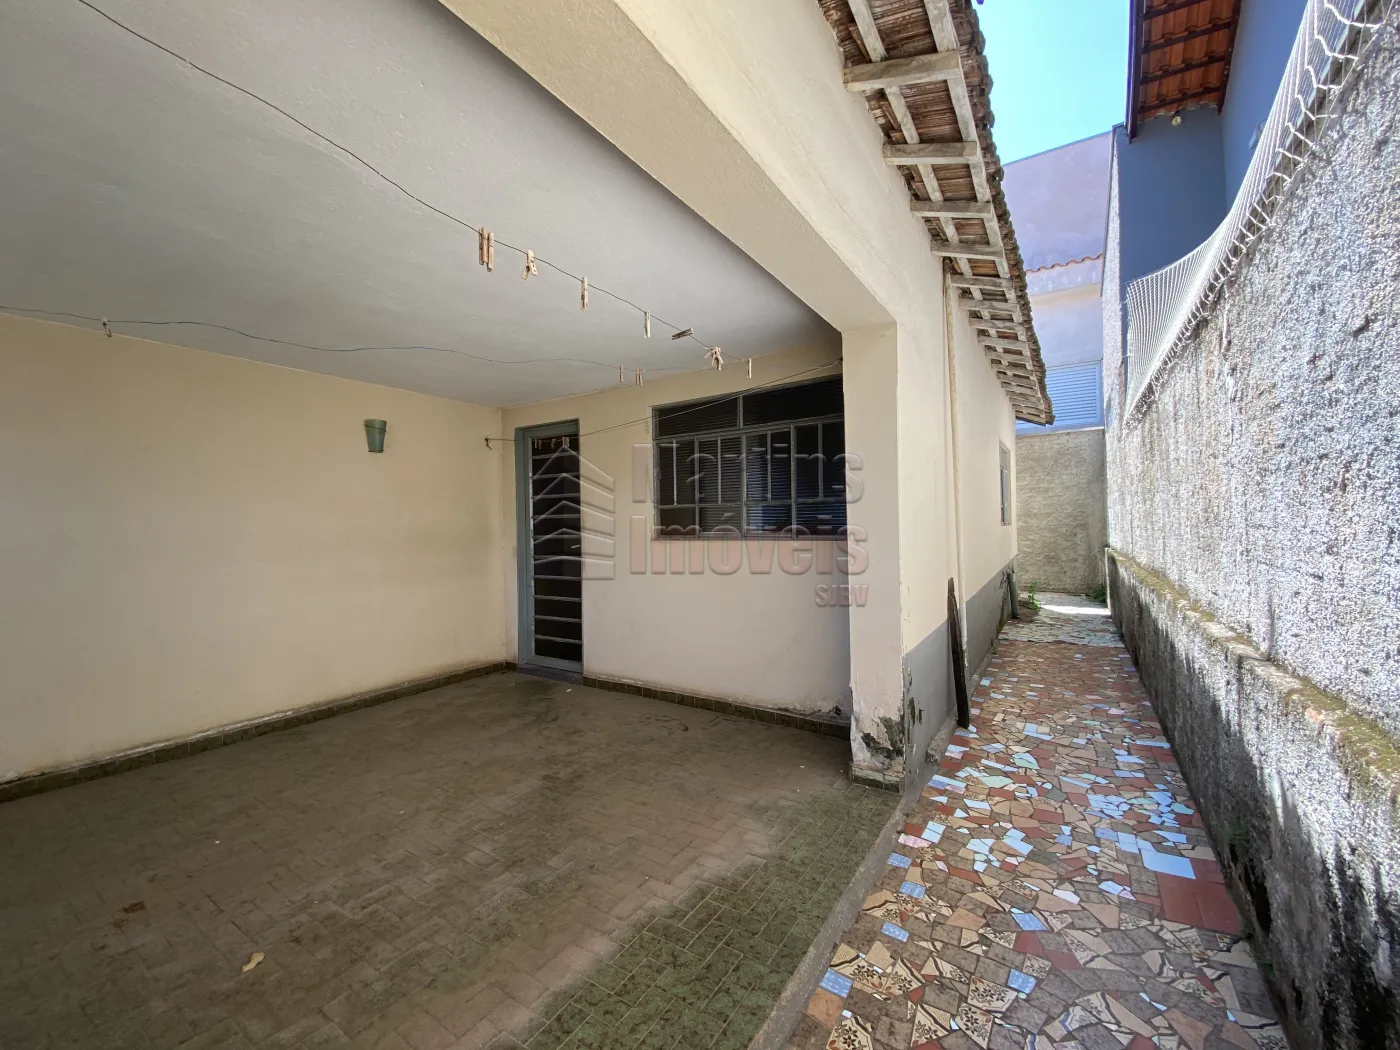 Comprar Casa / Padrão em São João da Boa Vista R$ 180.000,00 - Foto 4